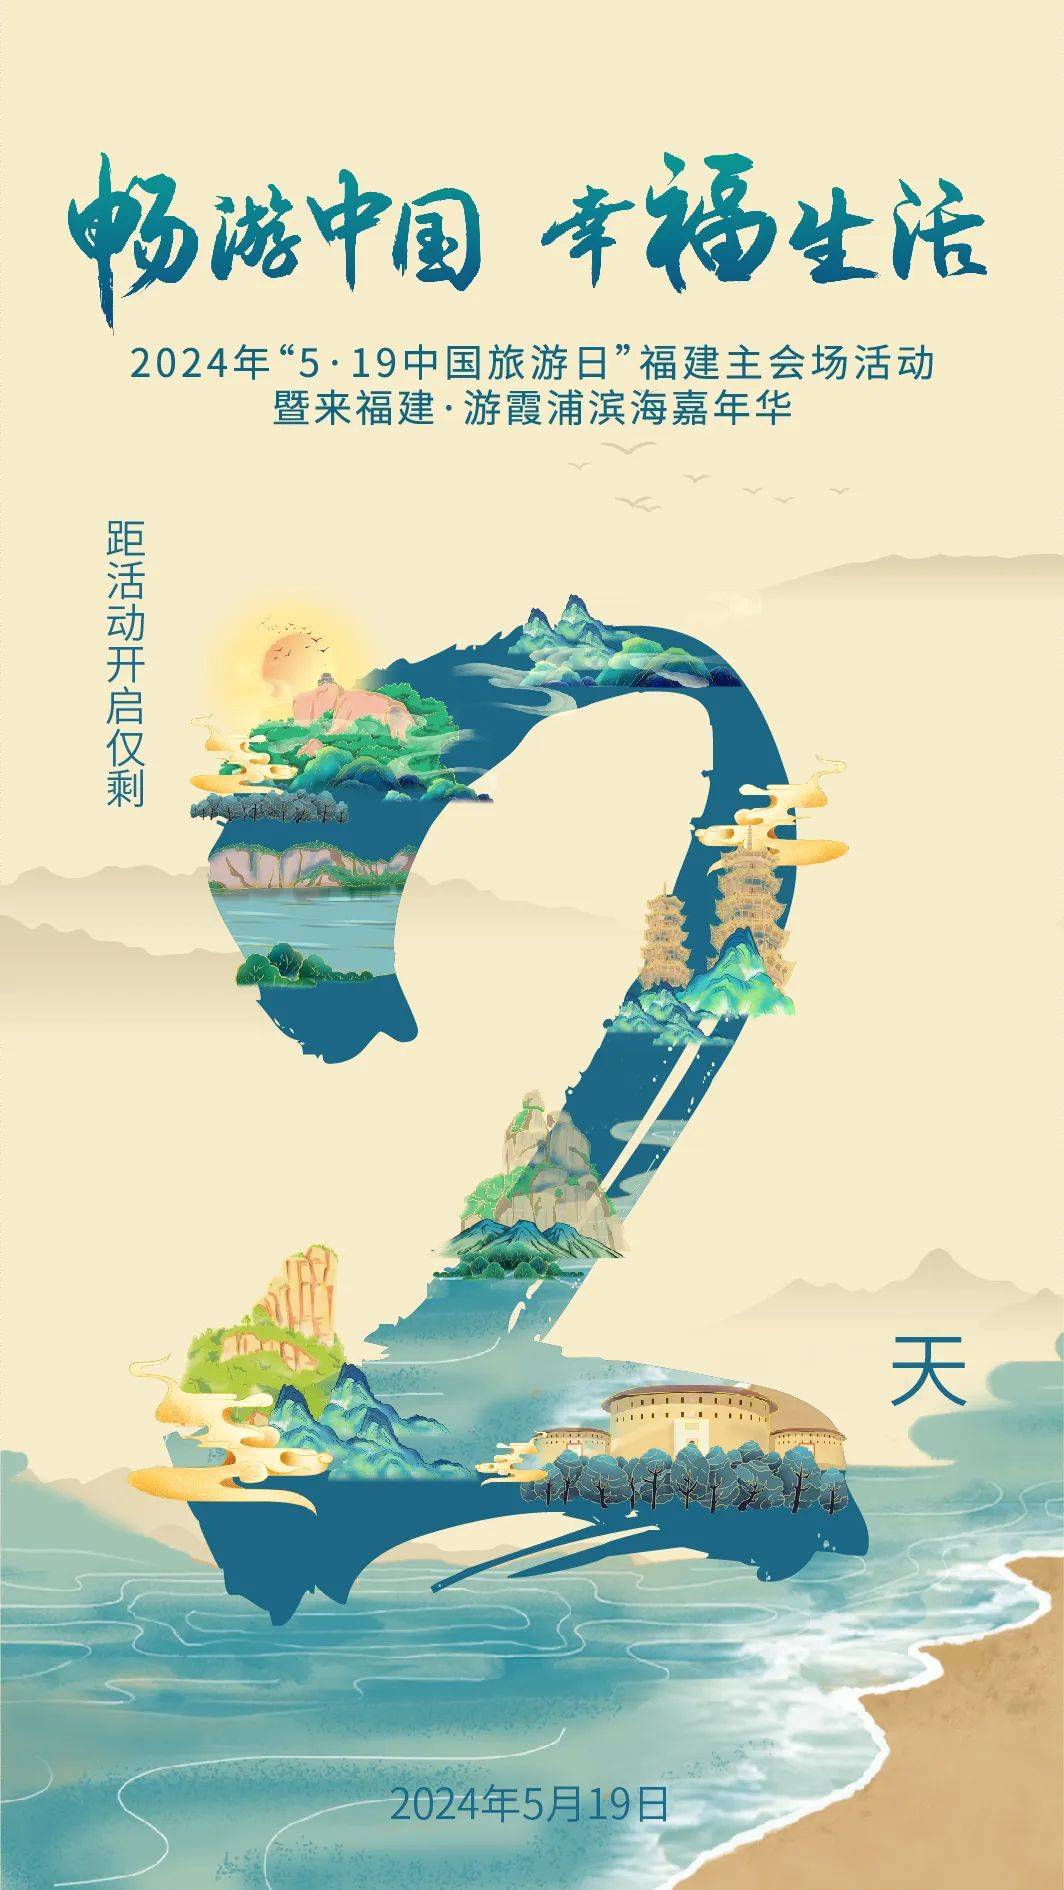 5·19中国旅游日福建主会场活动即将在宁德霞浦启幕!